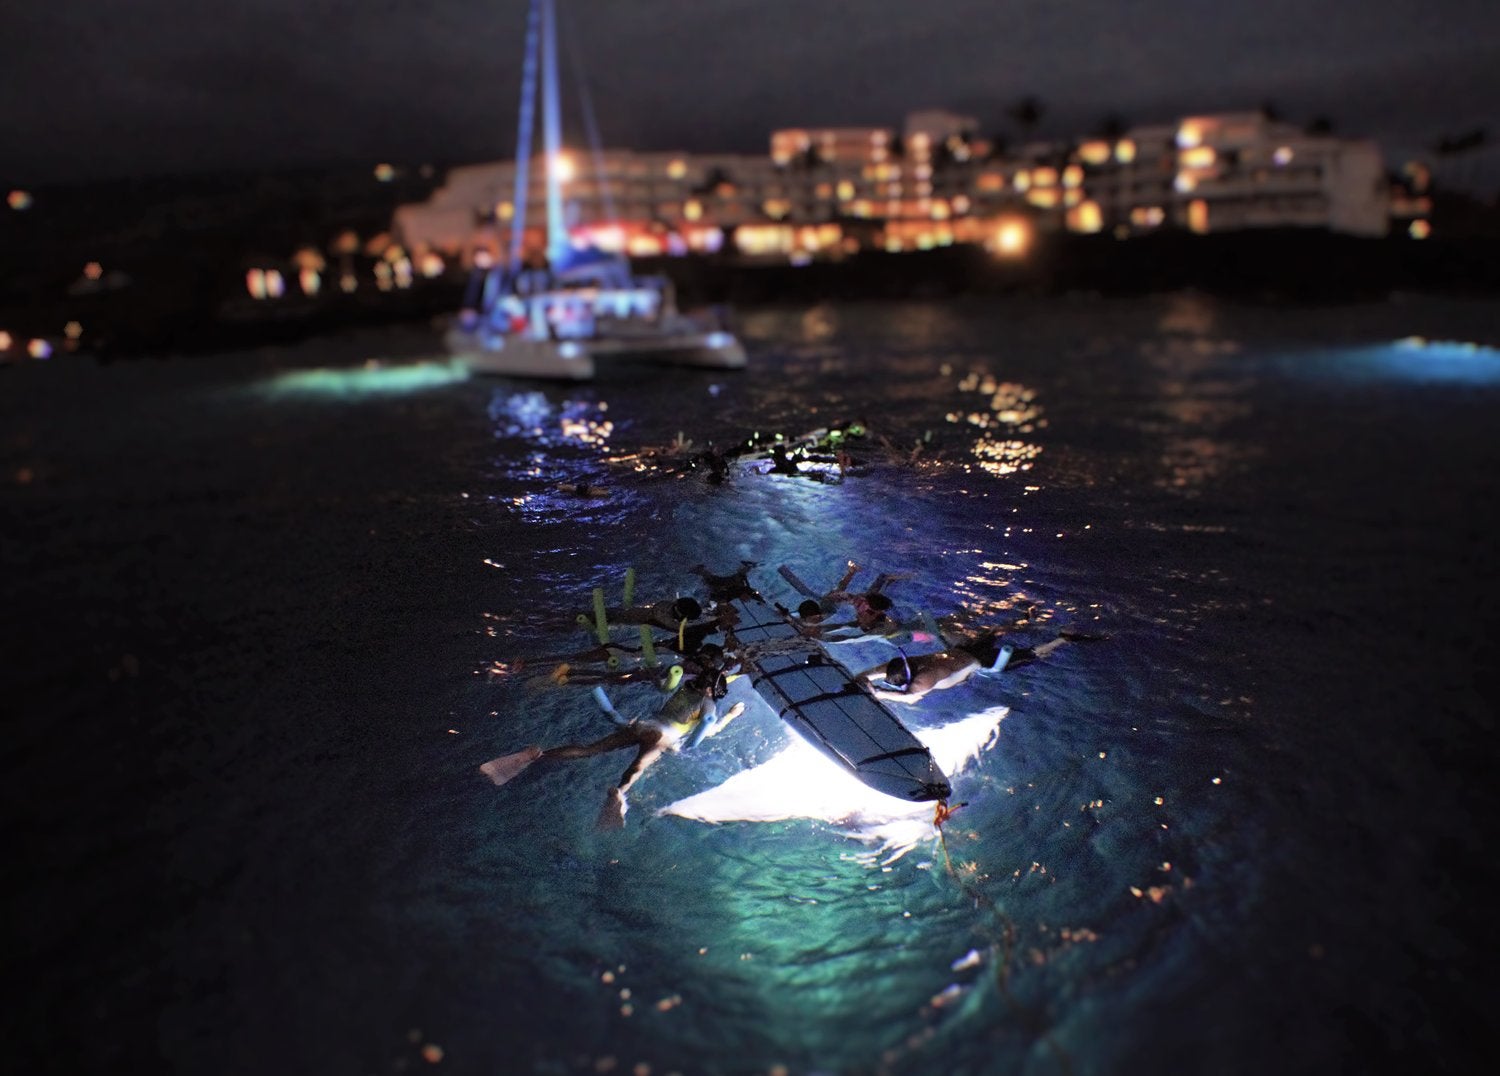  az éjszakai snorkeling manta sugarakkal csodálatos élmény. (fotó: Konastyle)